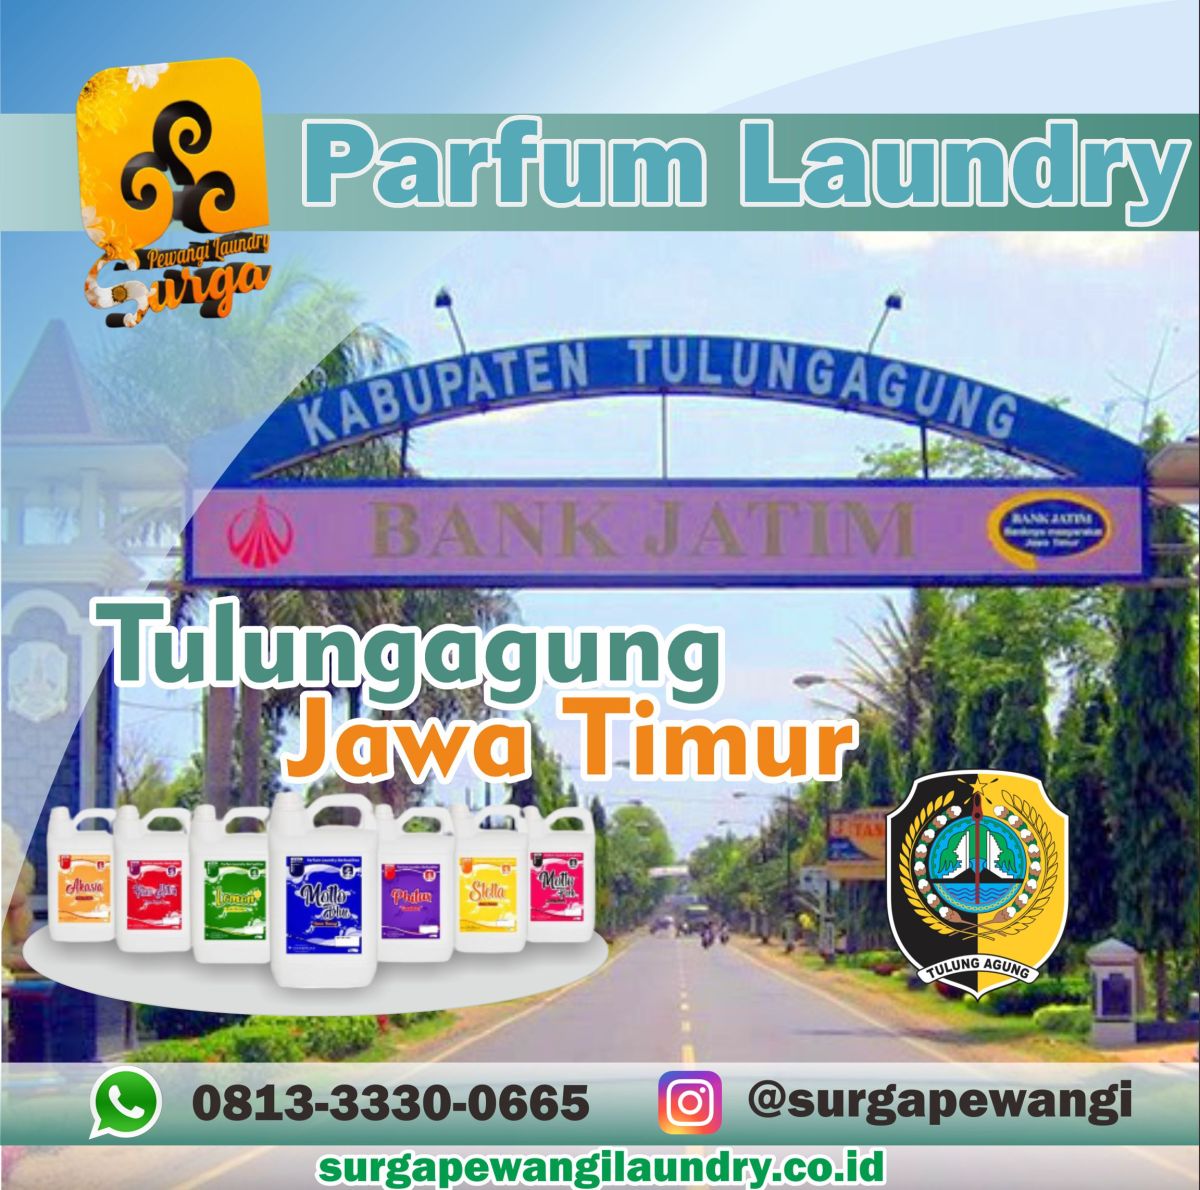 Parfum Laundry Kabupaten Tulungagung, Jawa Timur